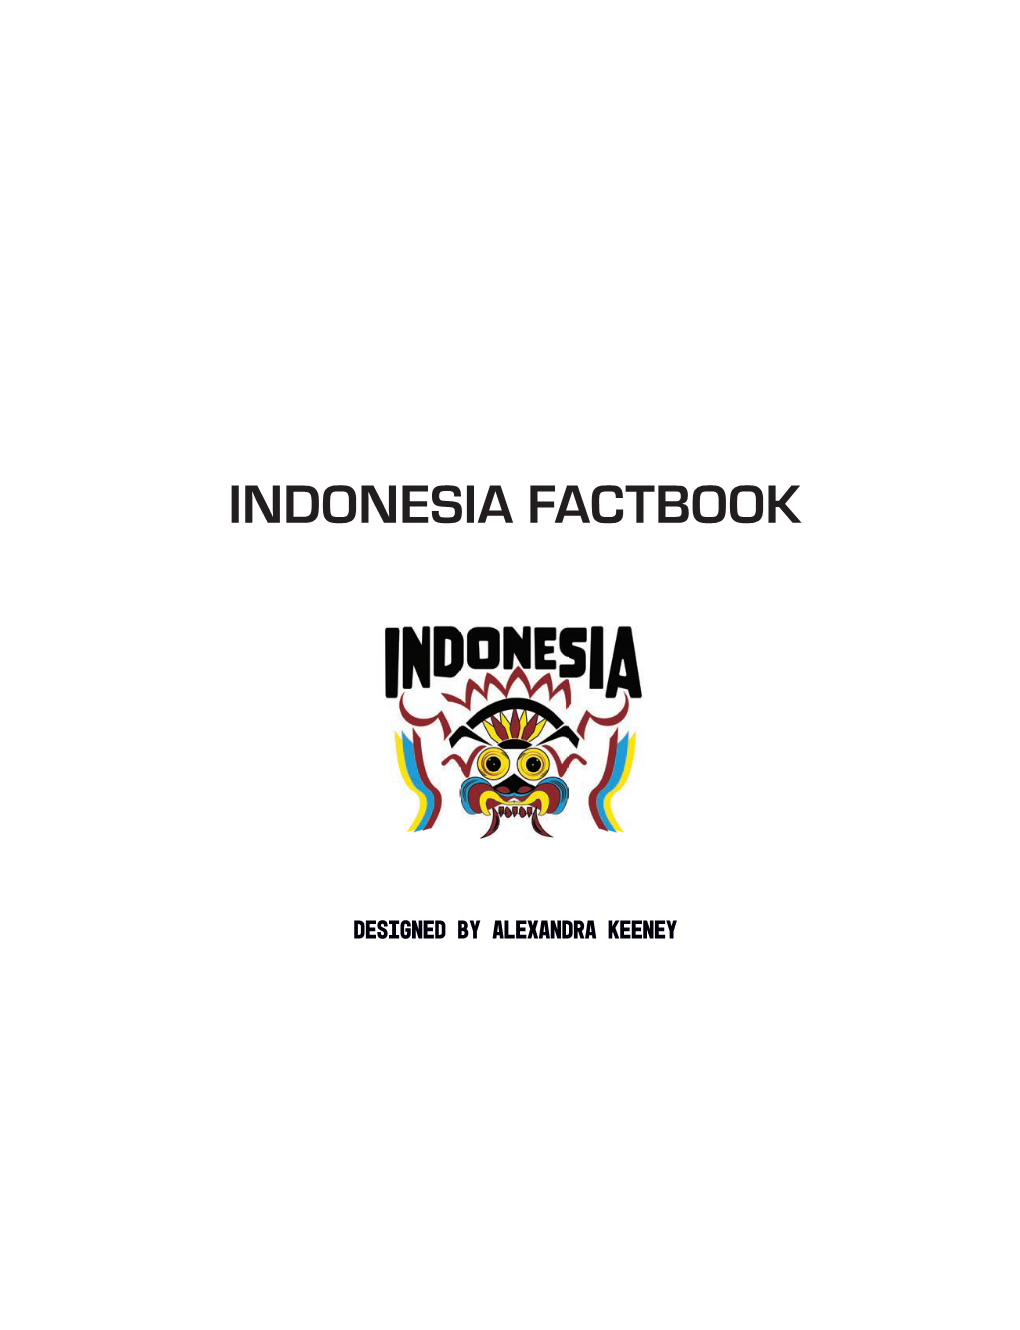 Indonesia Factbook